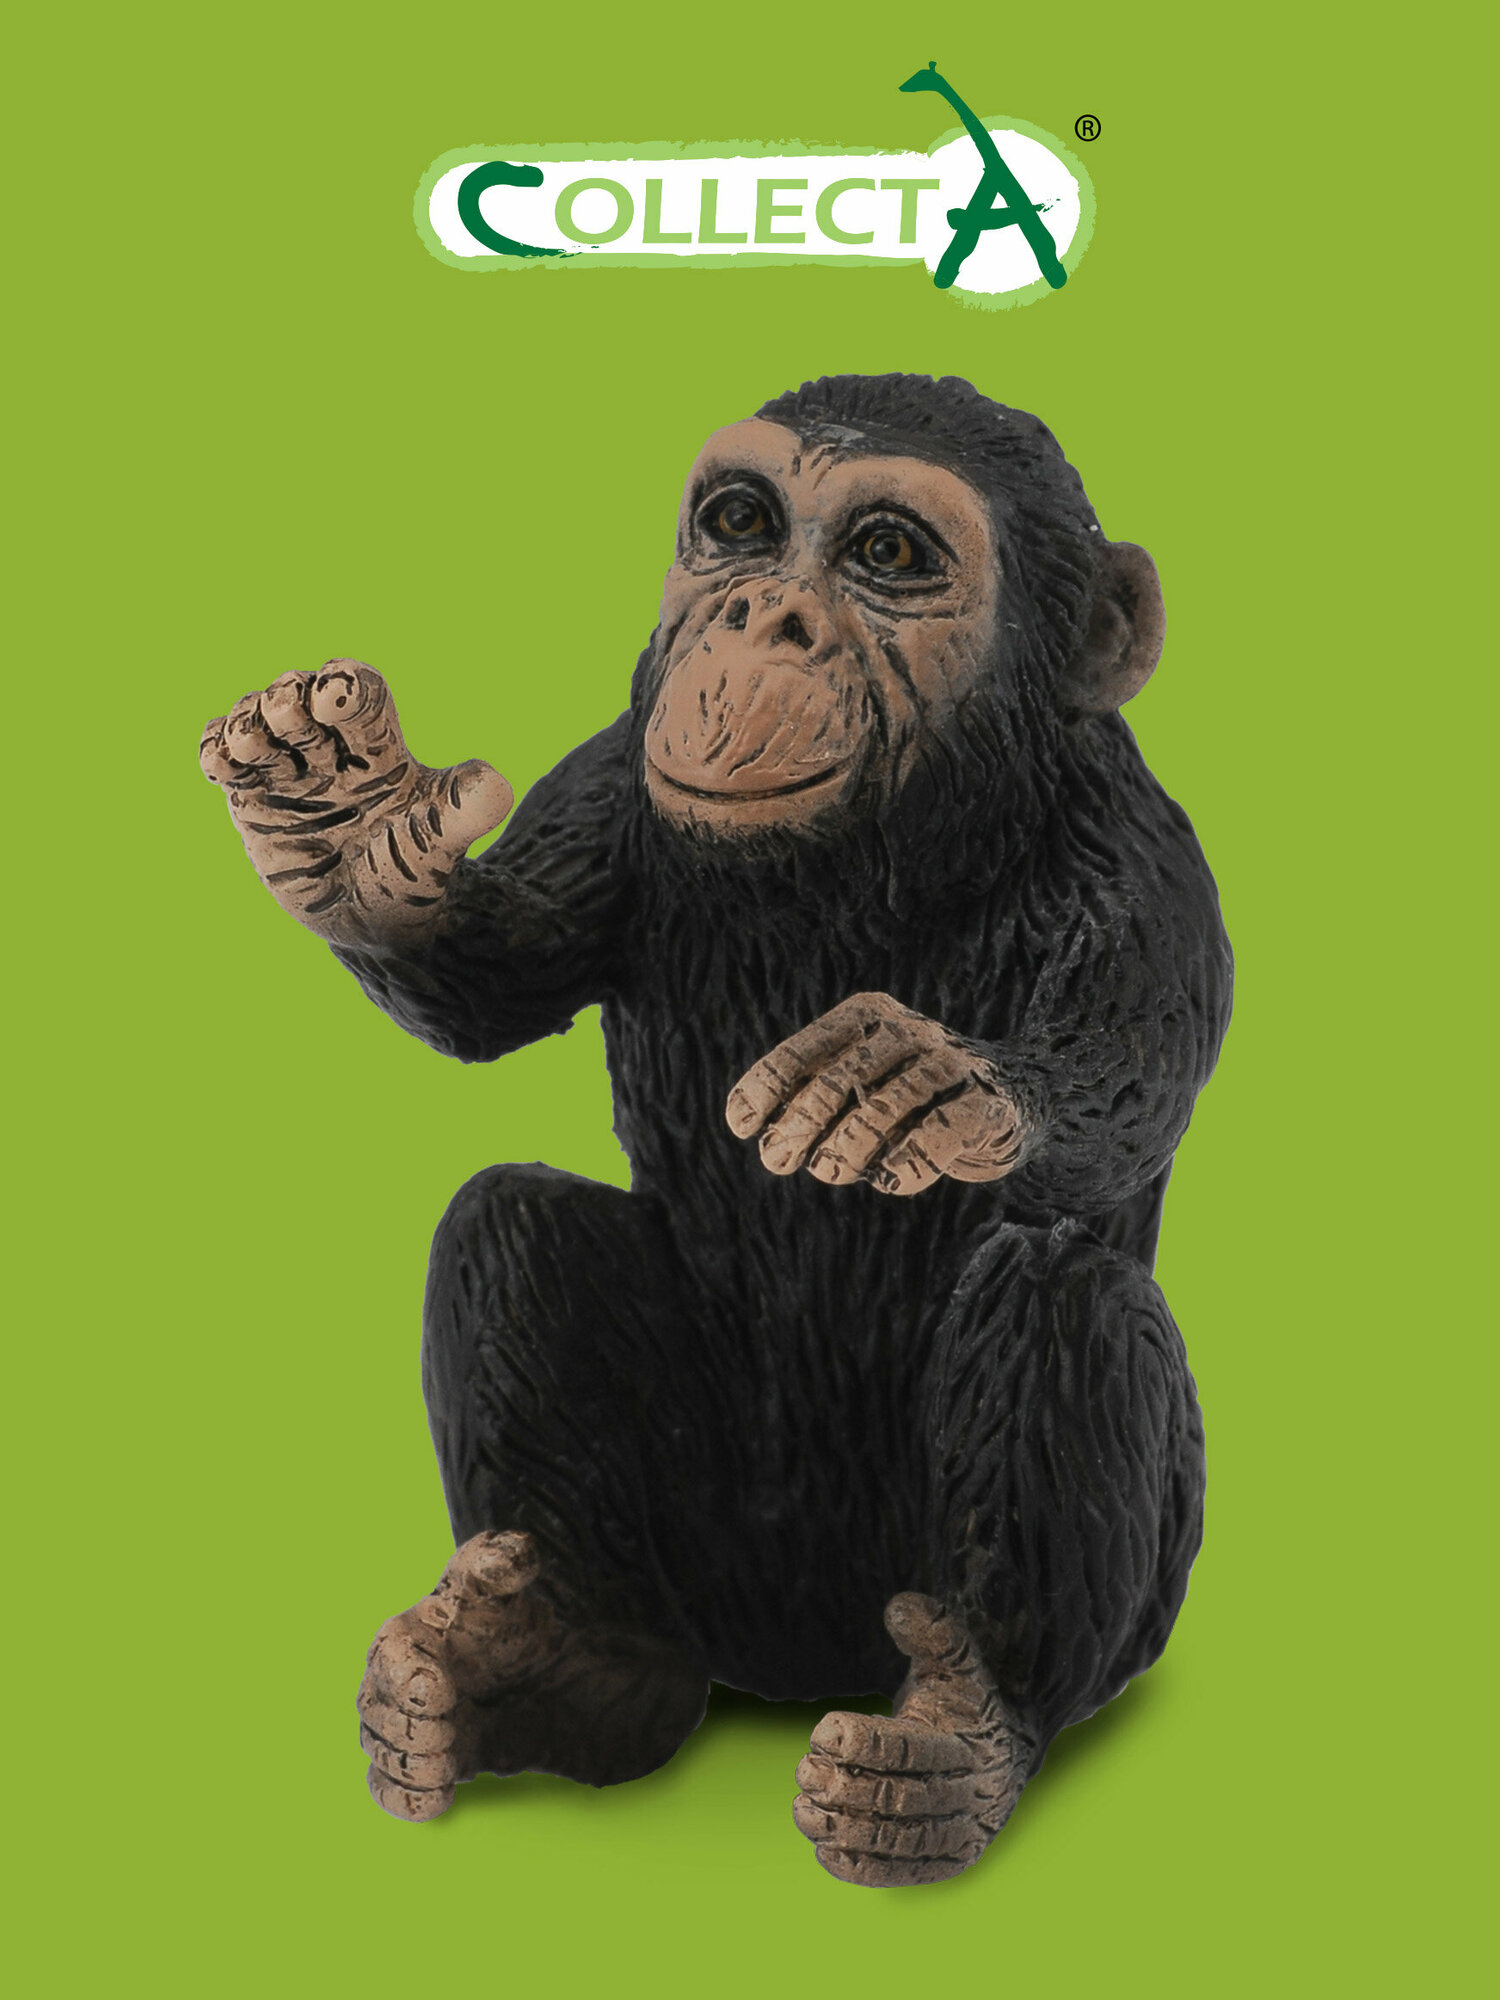 Фигурка животного Collecta, Детёныш шимпанзе